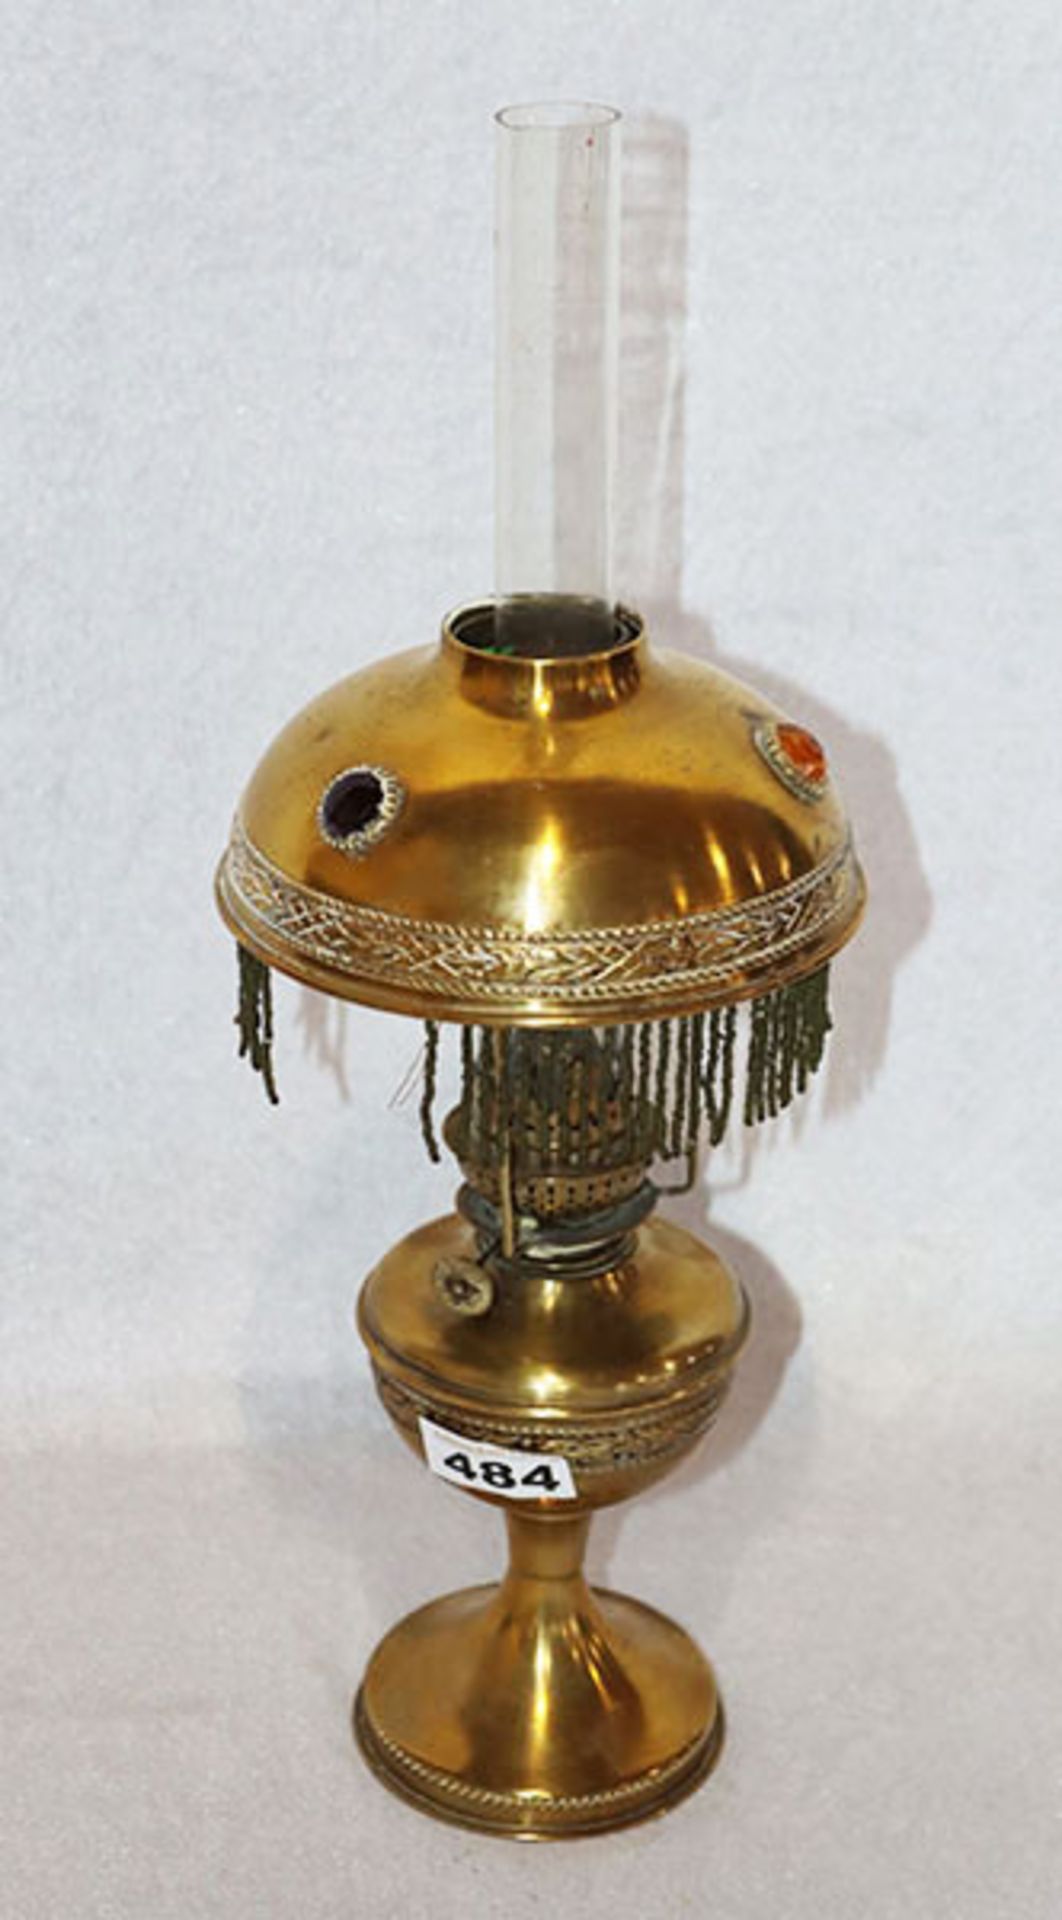 Messing Petroleumlampe mit Glaszylinder, H 42 cm, teils beschädigt, Alters- und Gebrauchsspuren